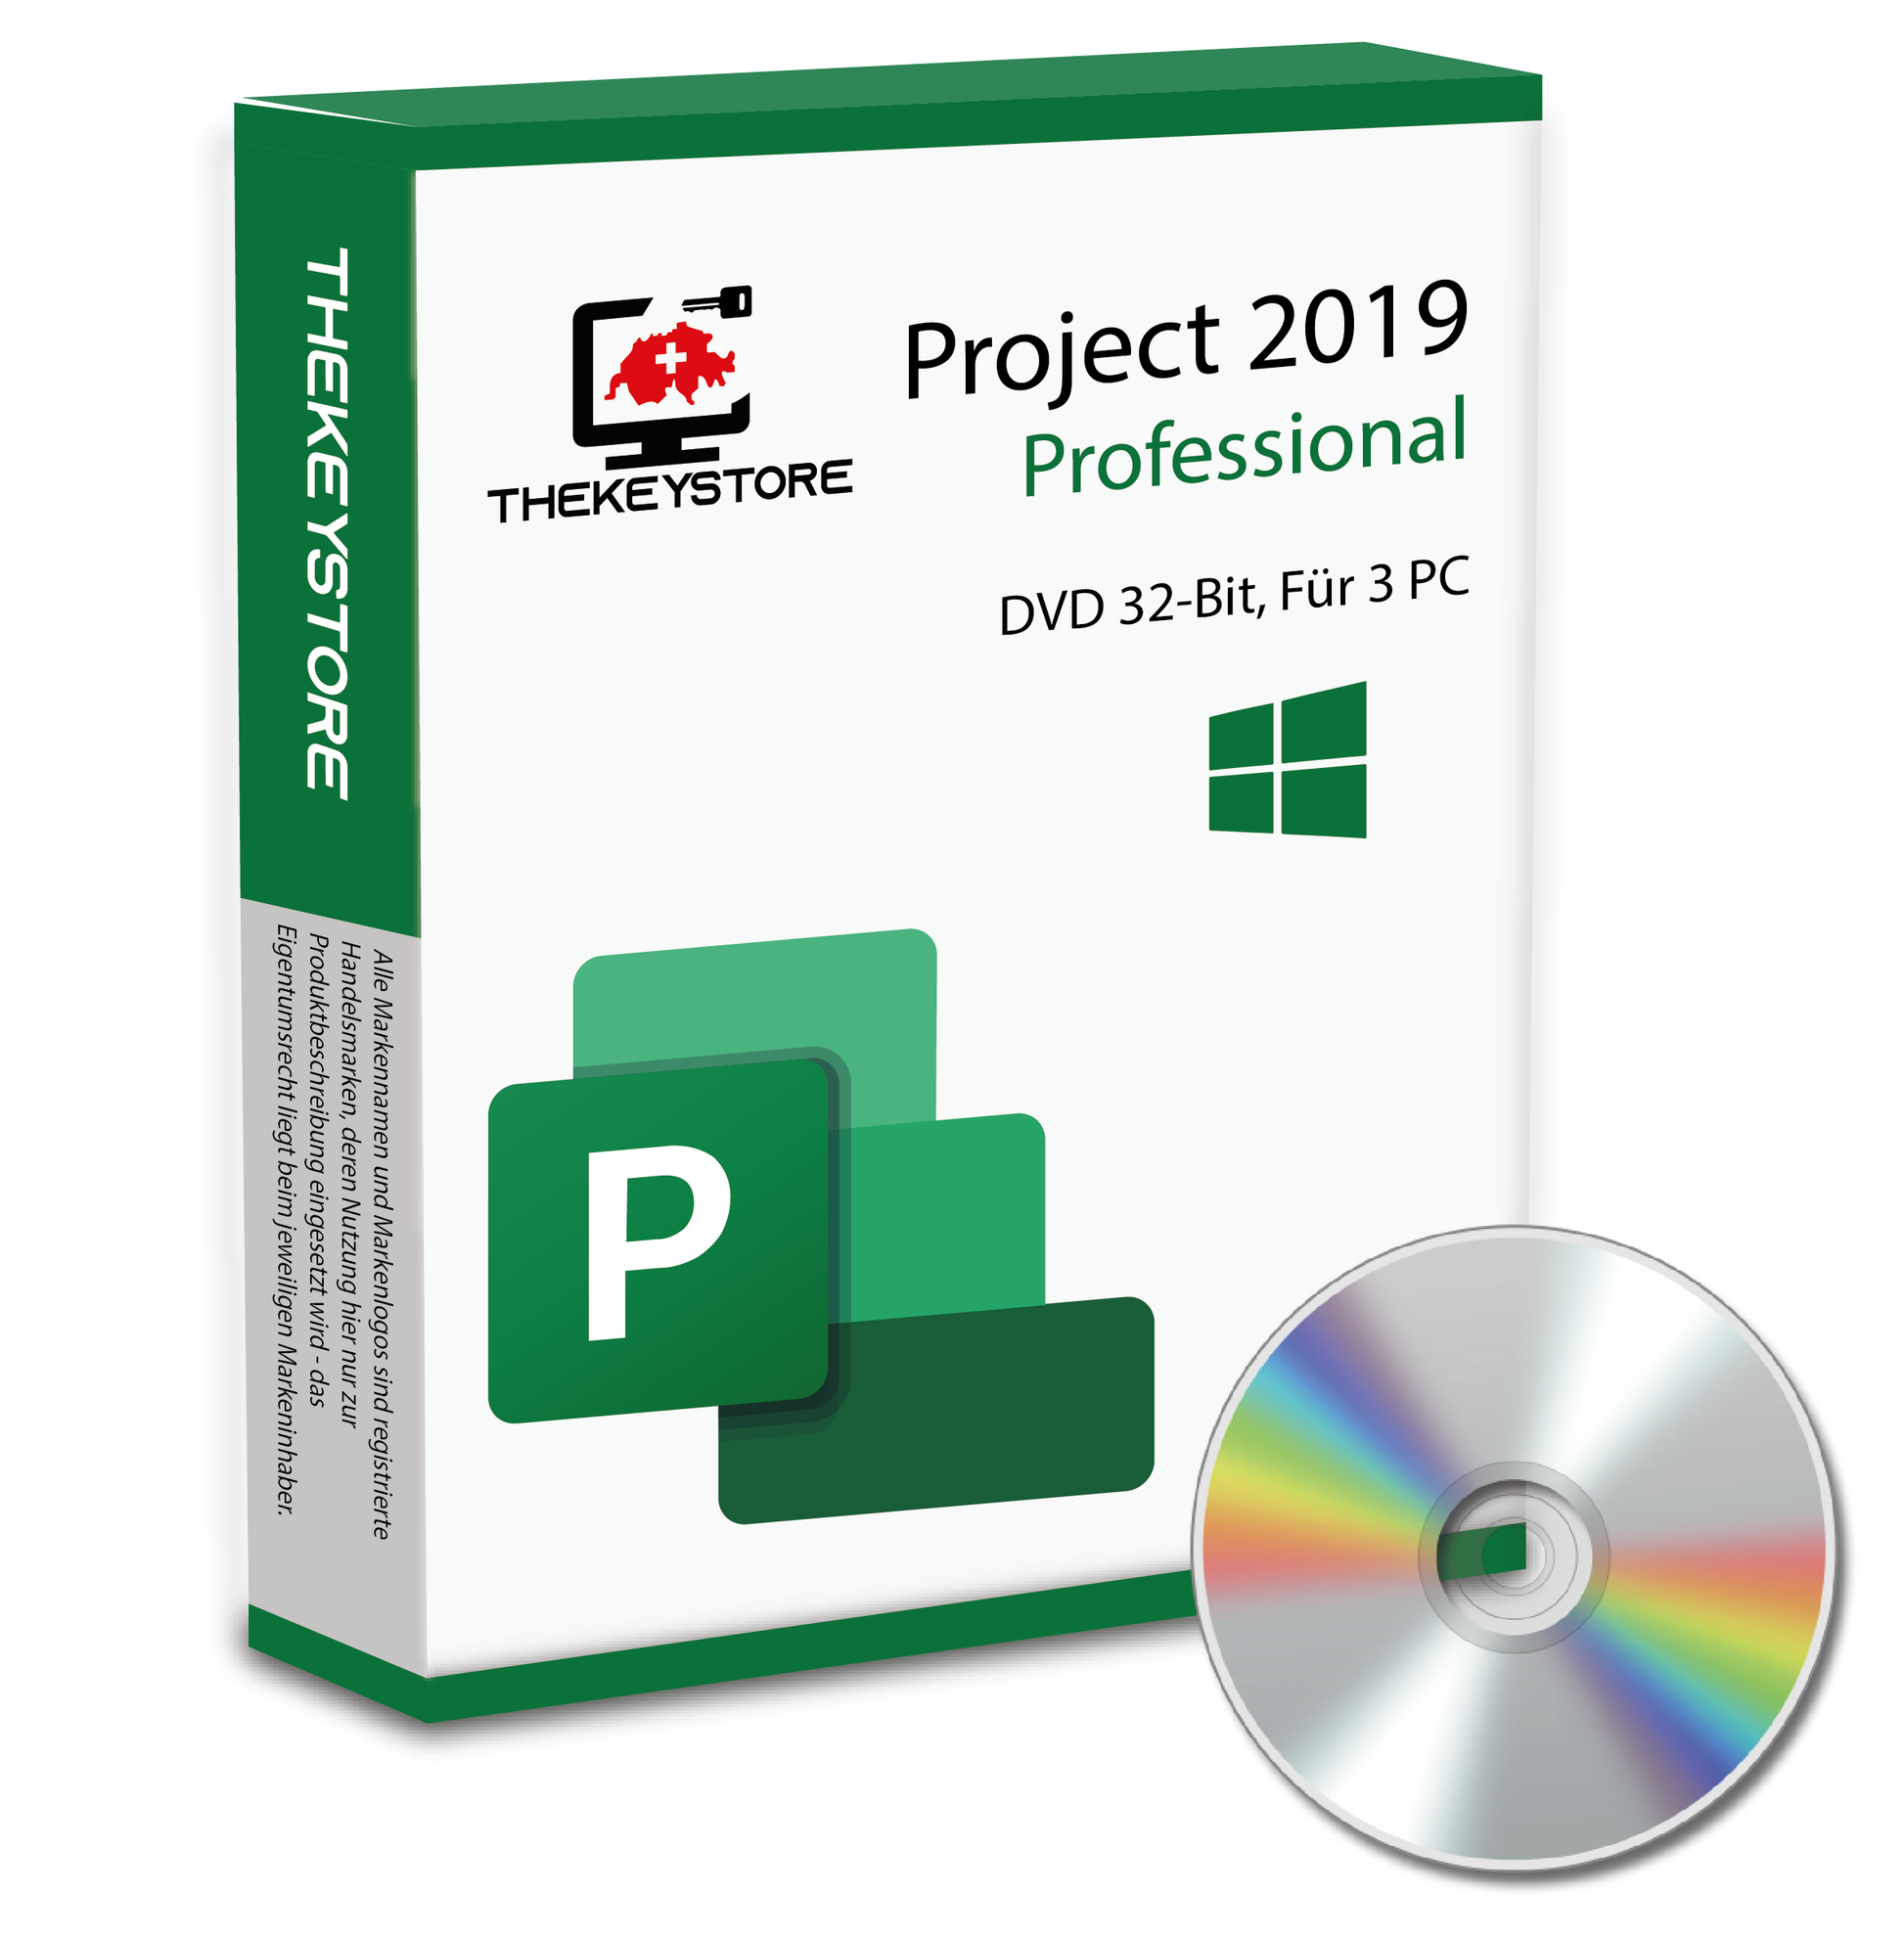 Microsoft Project 2019 Professional - Für 3 PC - TheKeyStore Schweiz